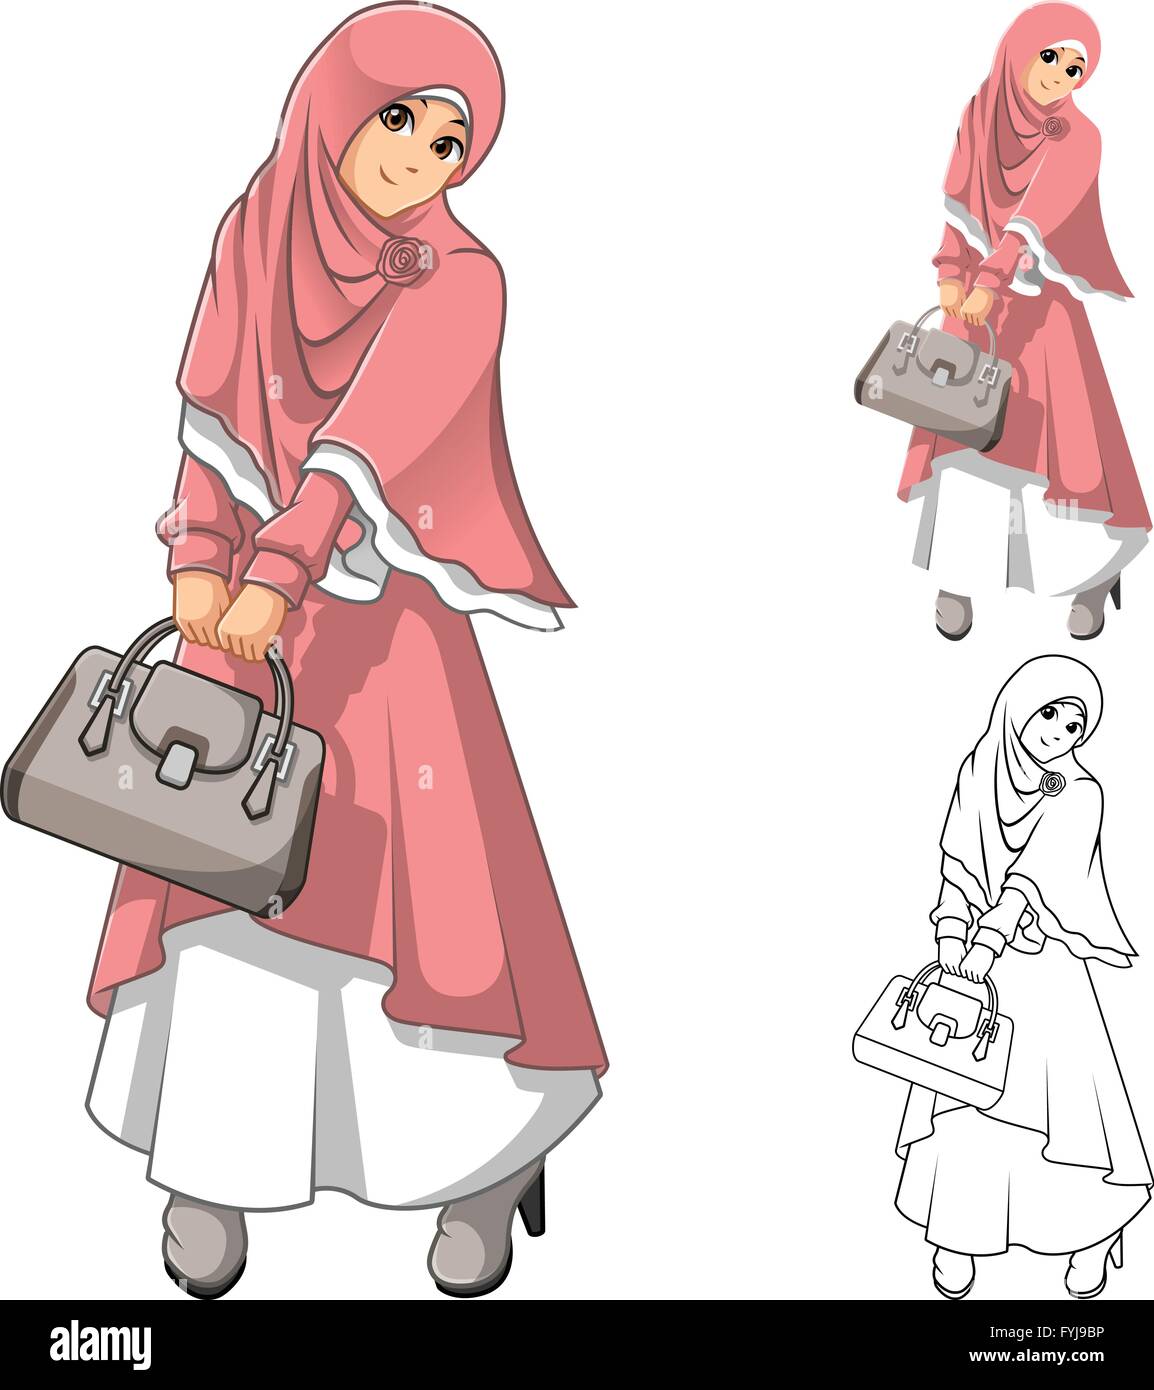 Muslimische Frau Mode tragen rosa Schleier oder Schal und Kleid Outfit mit einen Beutel Holding gehören flache Bauweise und skizziert Version Stock Vektor